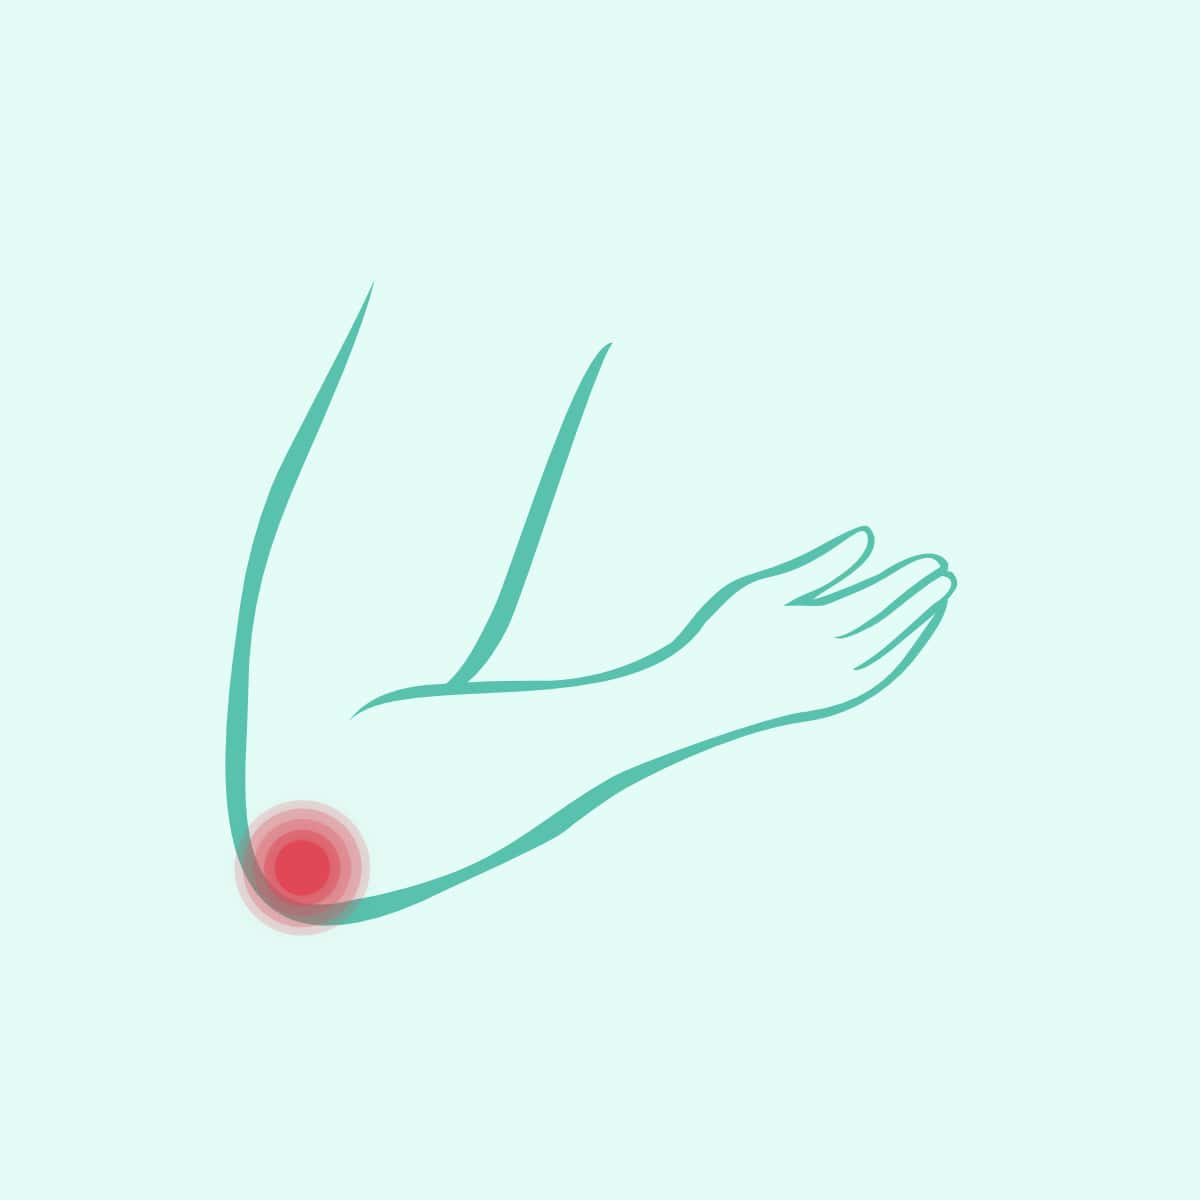 simptomi i liječenje artroze zglobova prsta koksartroza kučnog zgloba 3 stupnja jaka bol